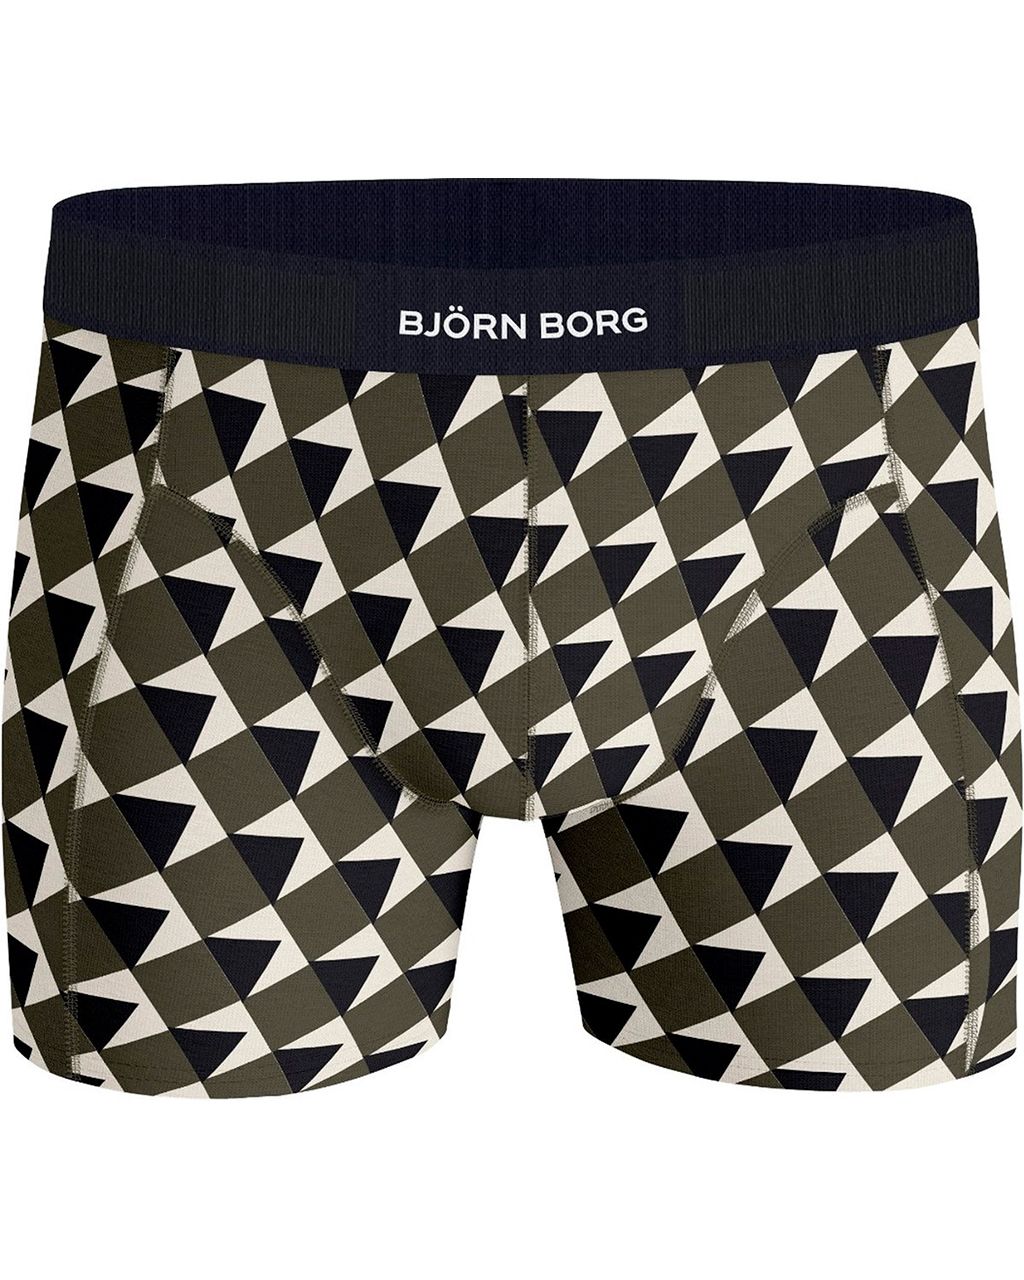 Björn Borg Boxershort Donker groen 080049-001-L